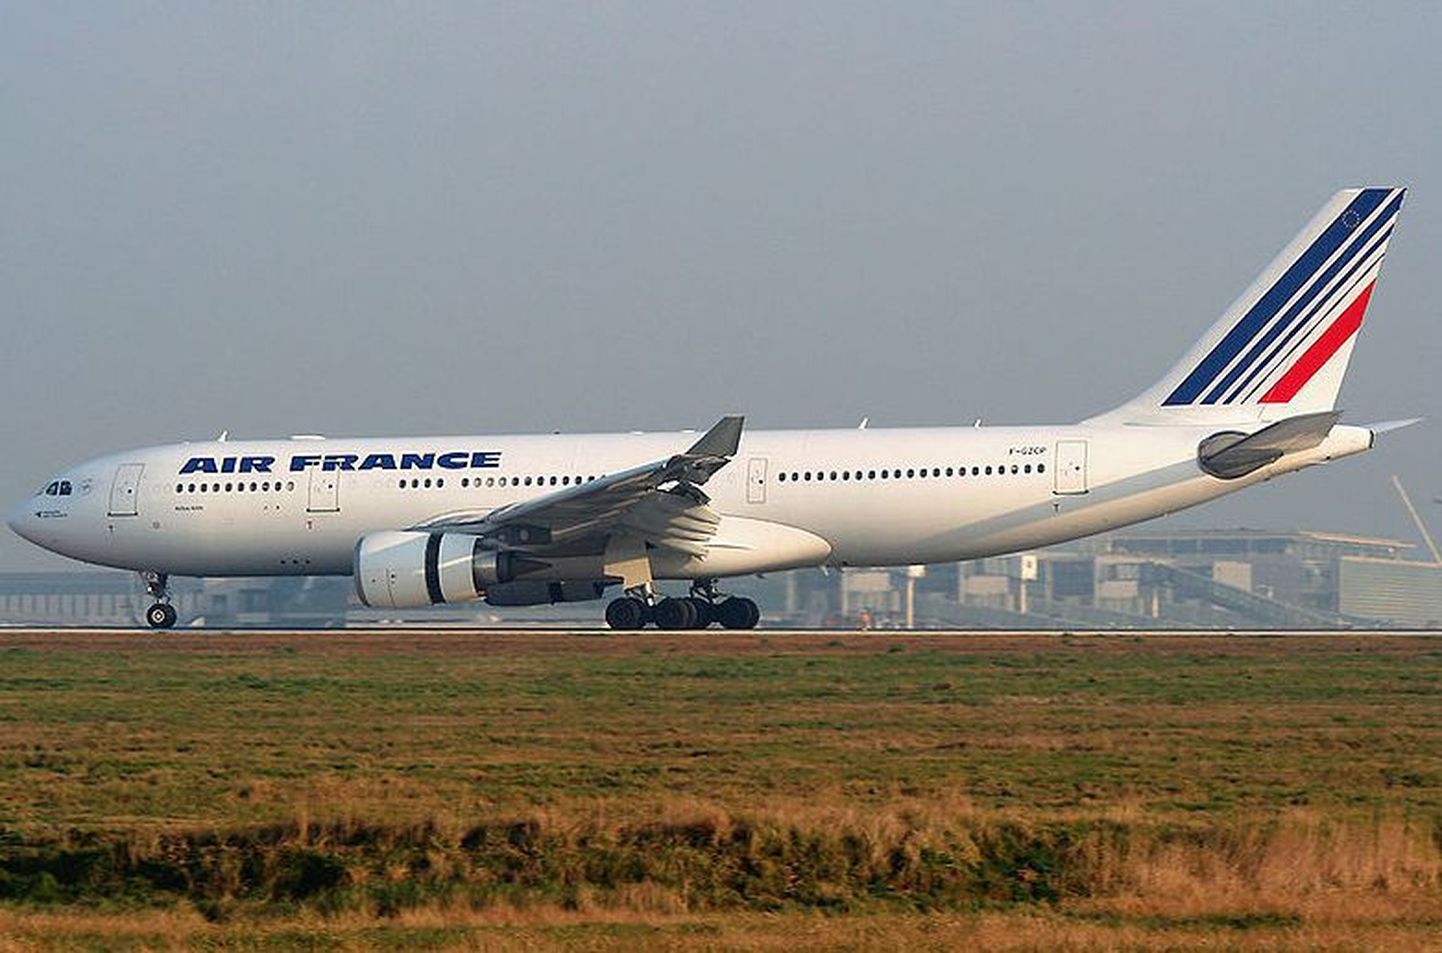 Air France` lennuk Airbus A330